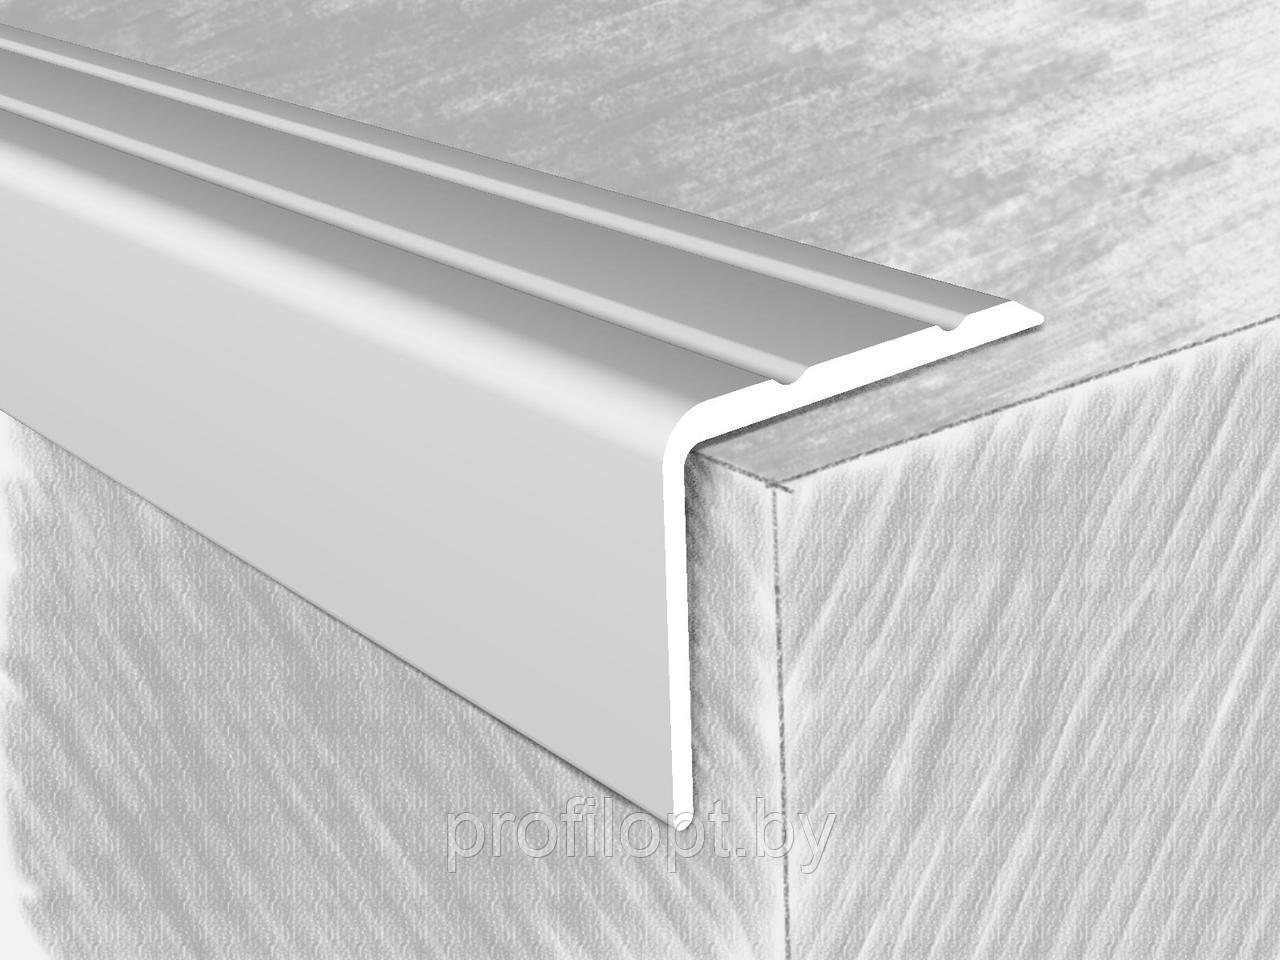 Уголок алюминиевый 24×18 мм., серебро 180 см